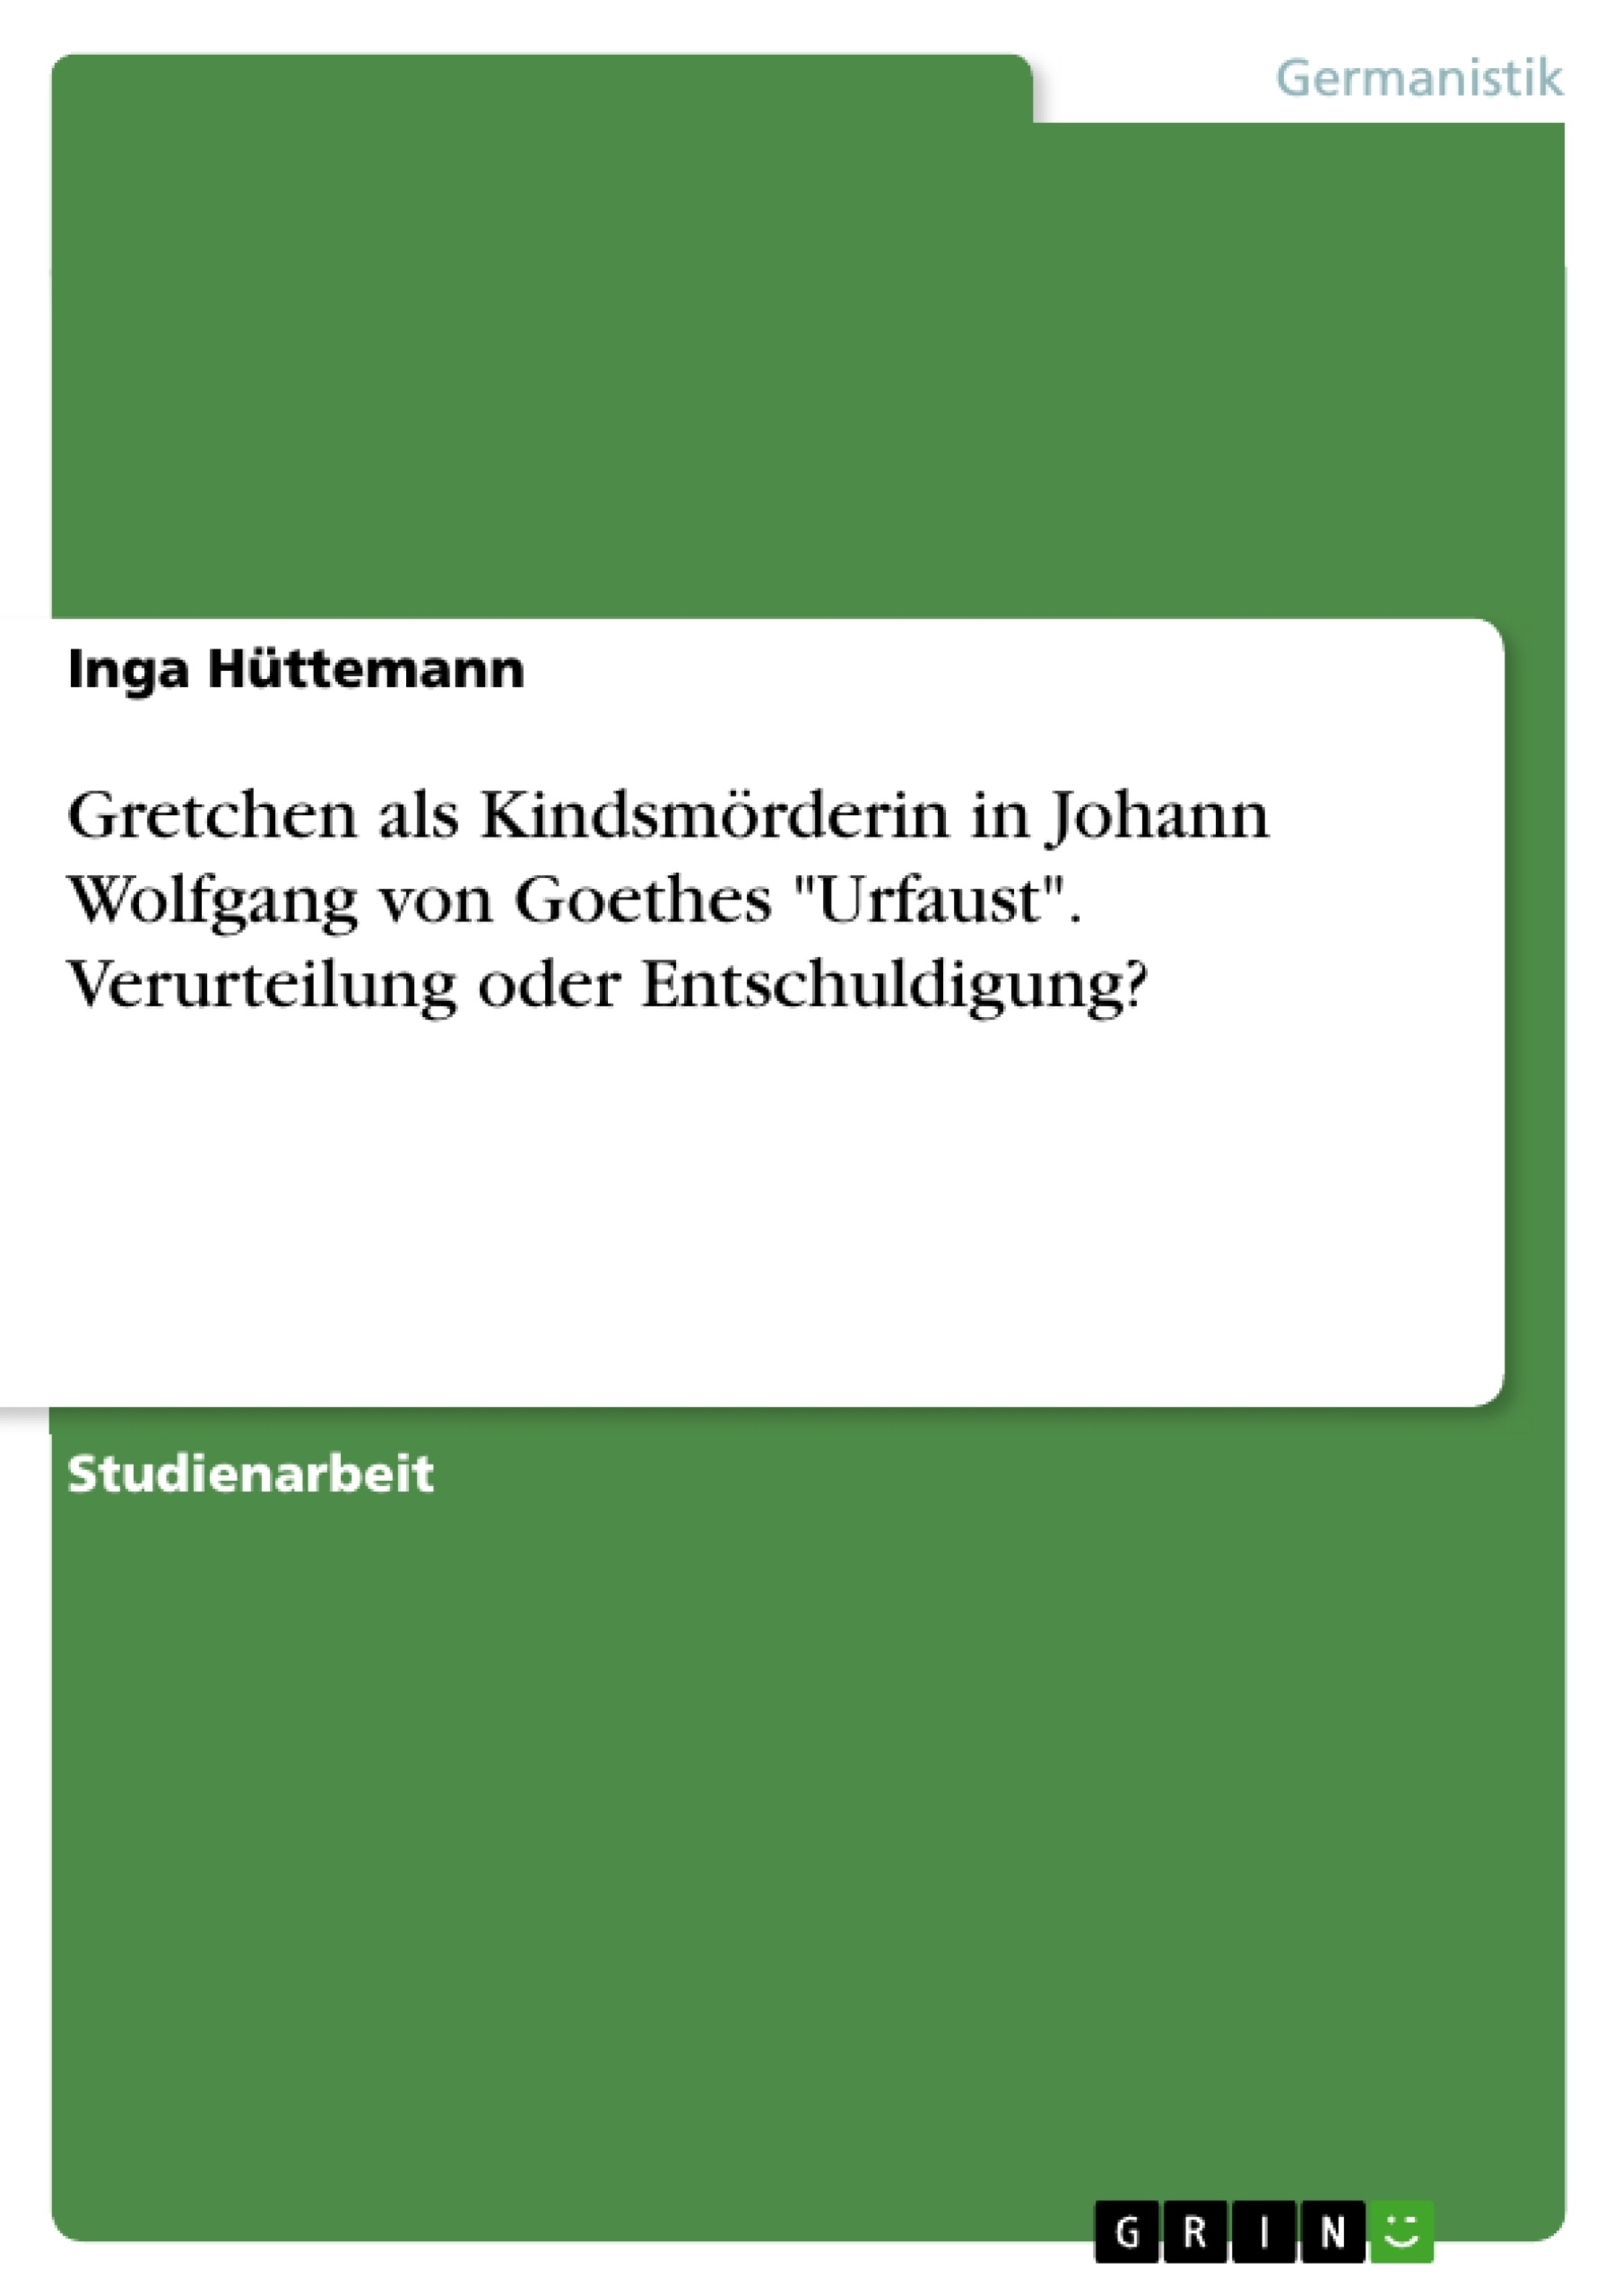 Título: Gretchen als Kindsmörderin in Johann Wolfgang von Goethes "Urfaust". Verurteilung oder Entschuldigung?